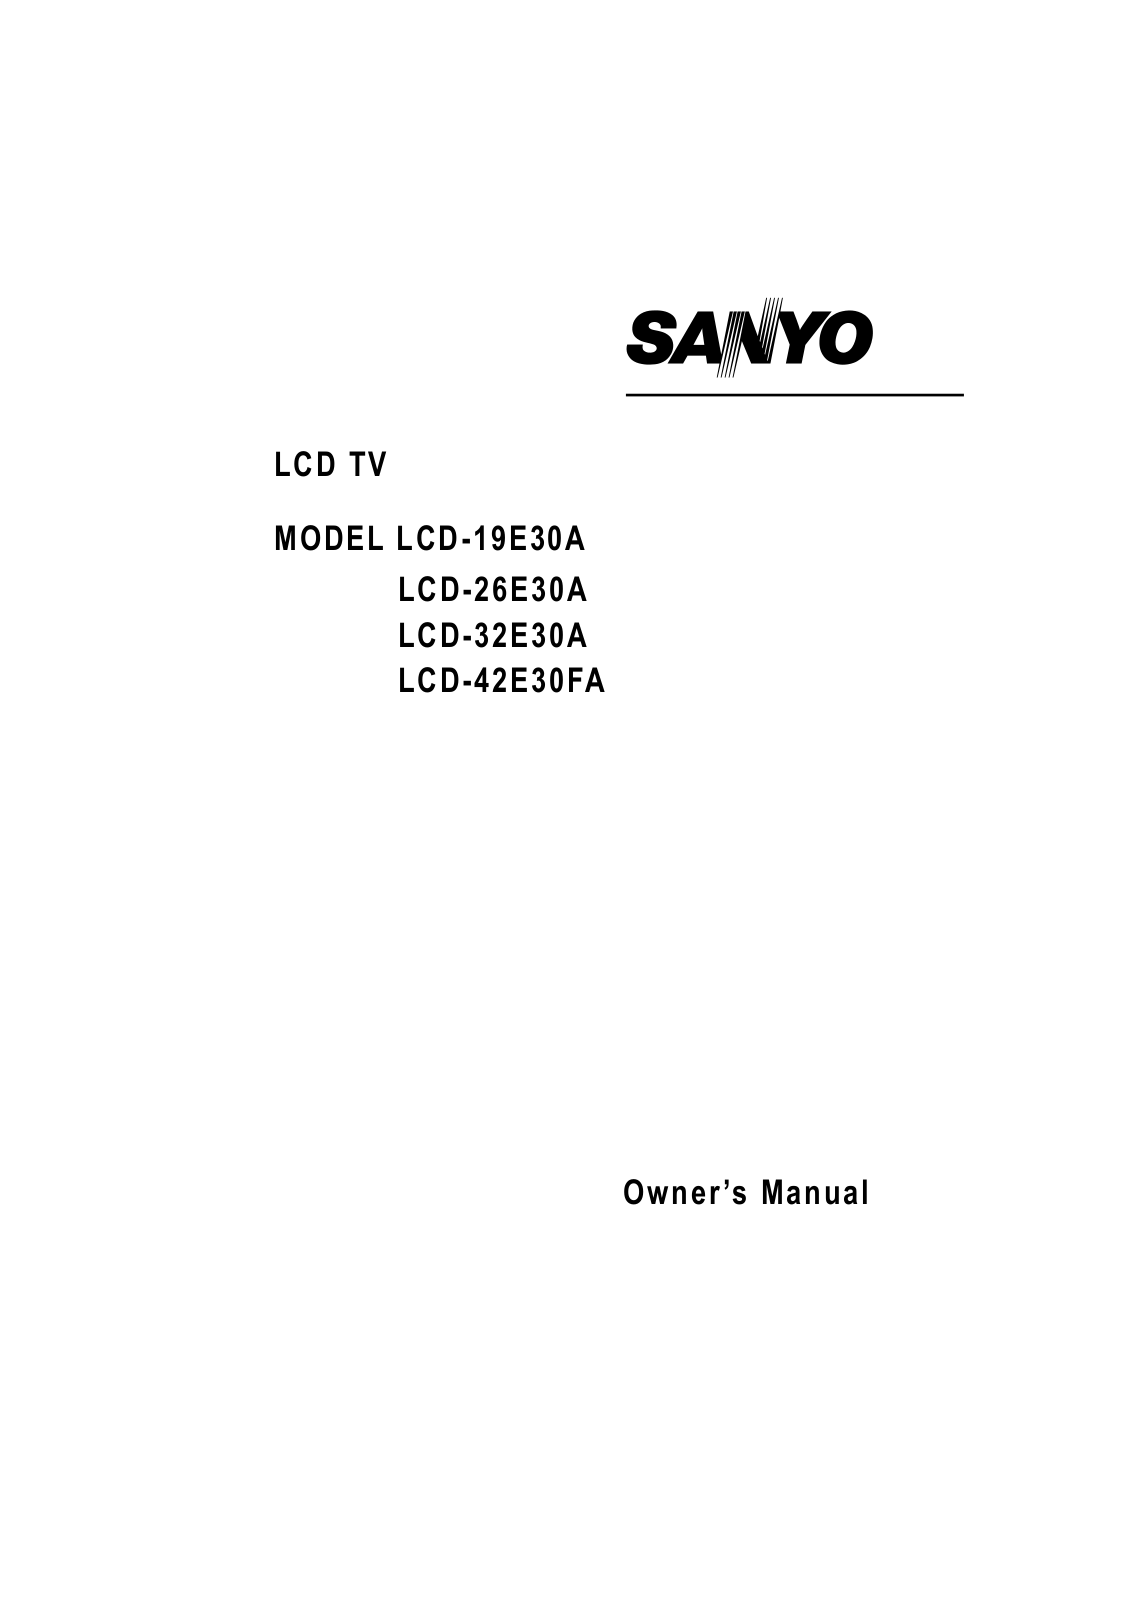 Sanyo LCD-32E30A, LCD-26E30A, LCD-19E30A, LCD-42E30FA User Manual 2